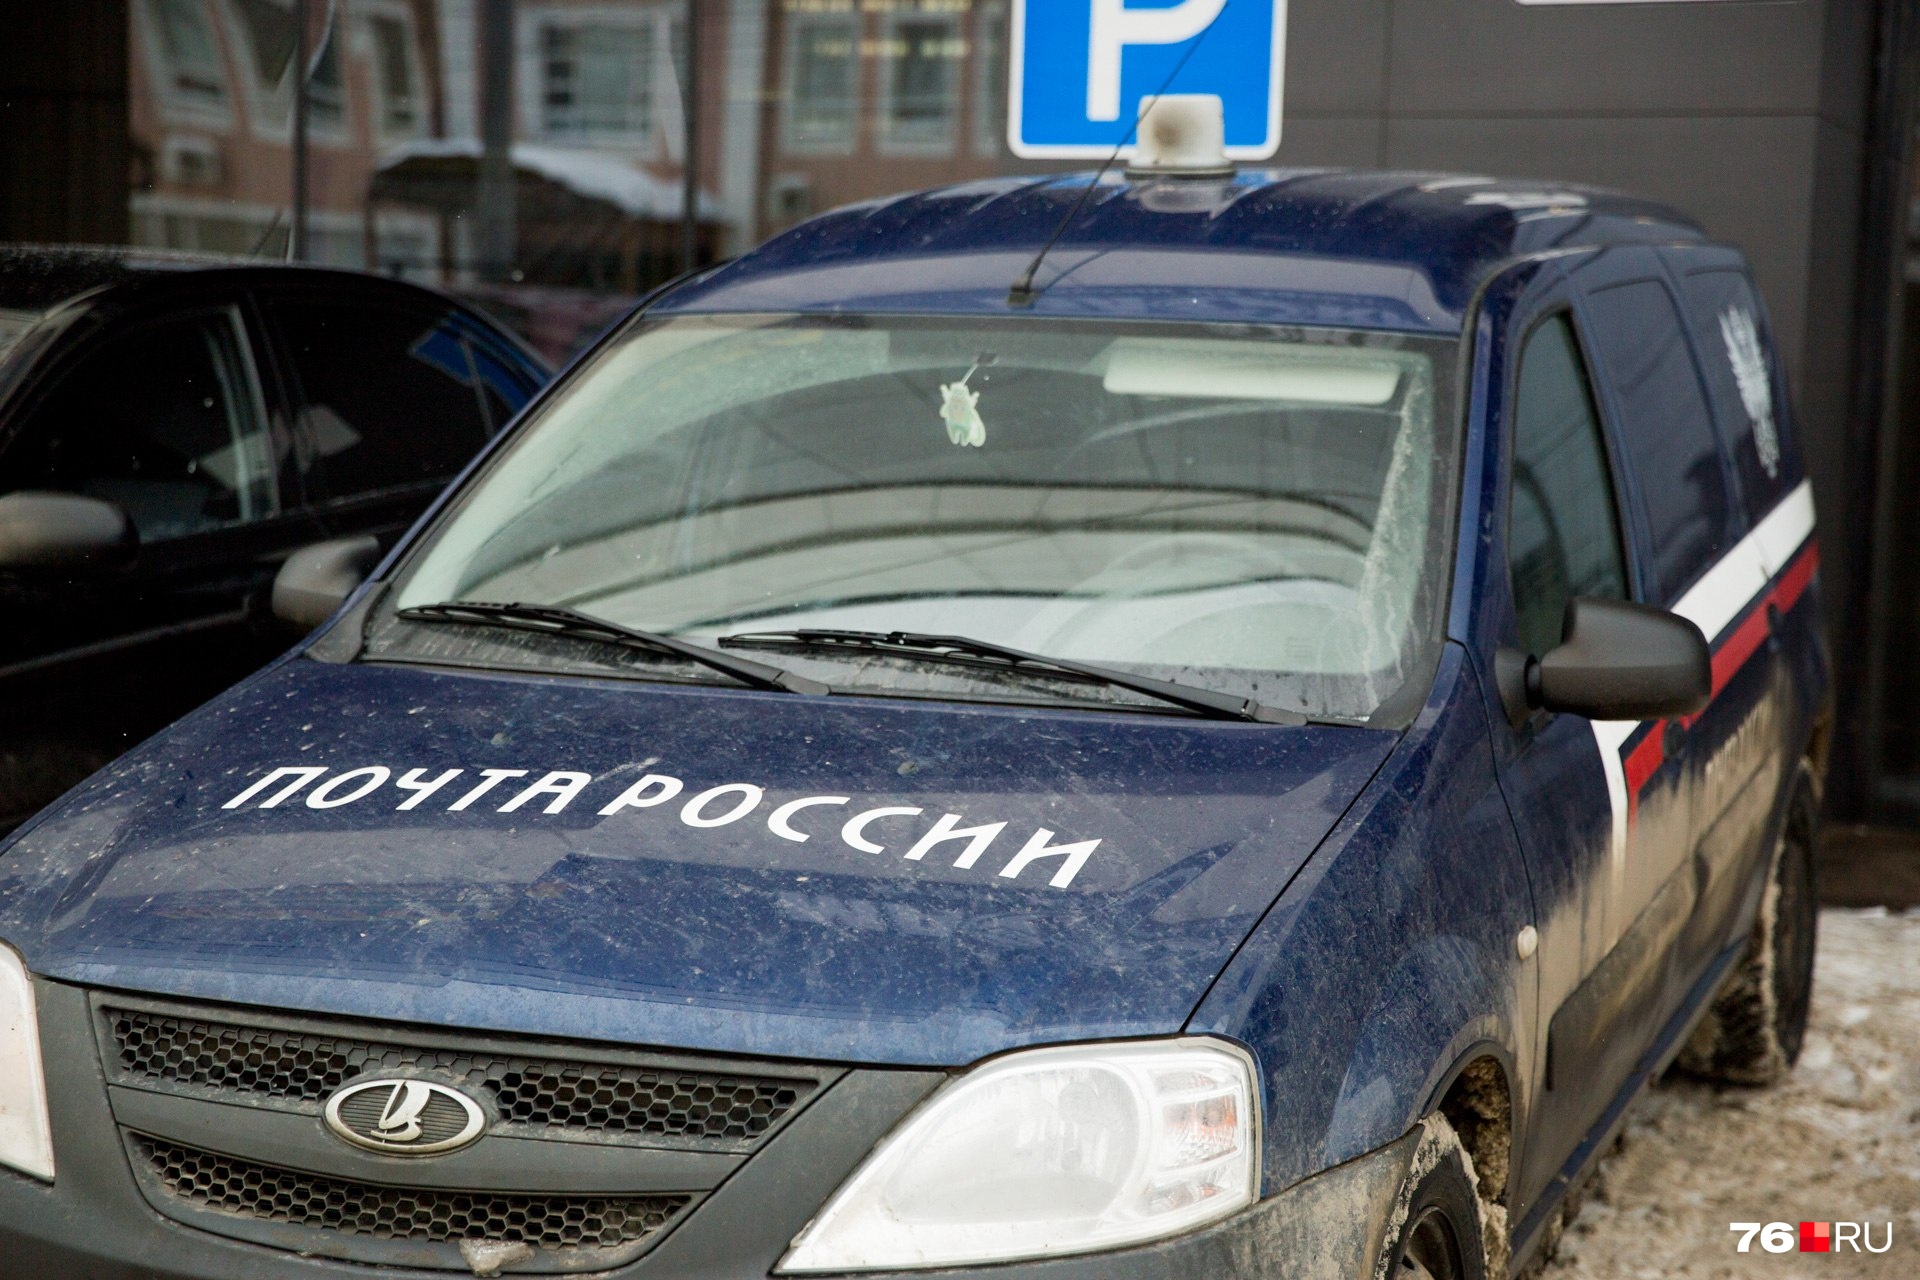 Под Ярославлем машина «Почты России» сбила мужчину на дороге: что известно о состоянии человека